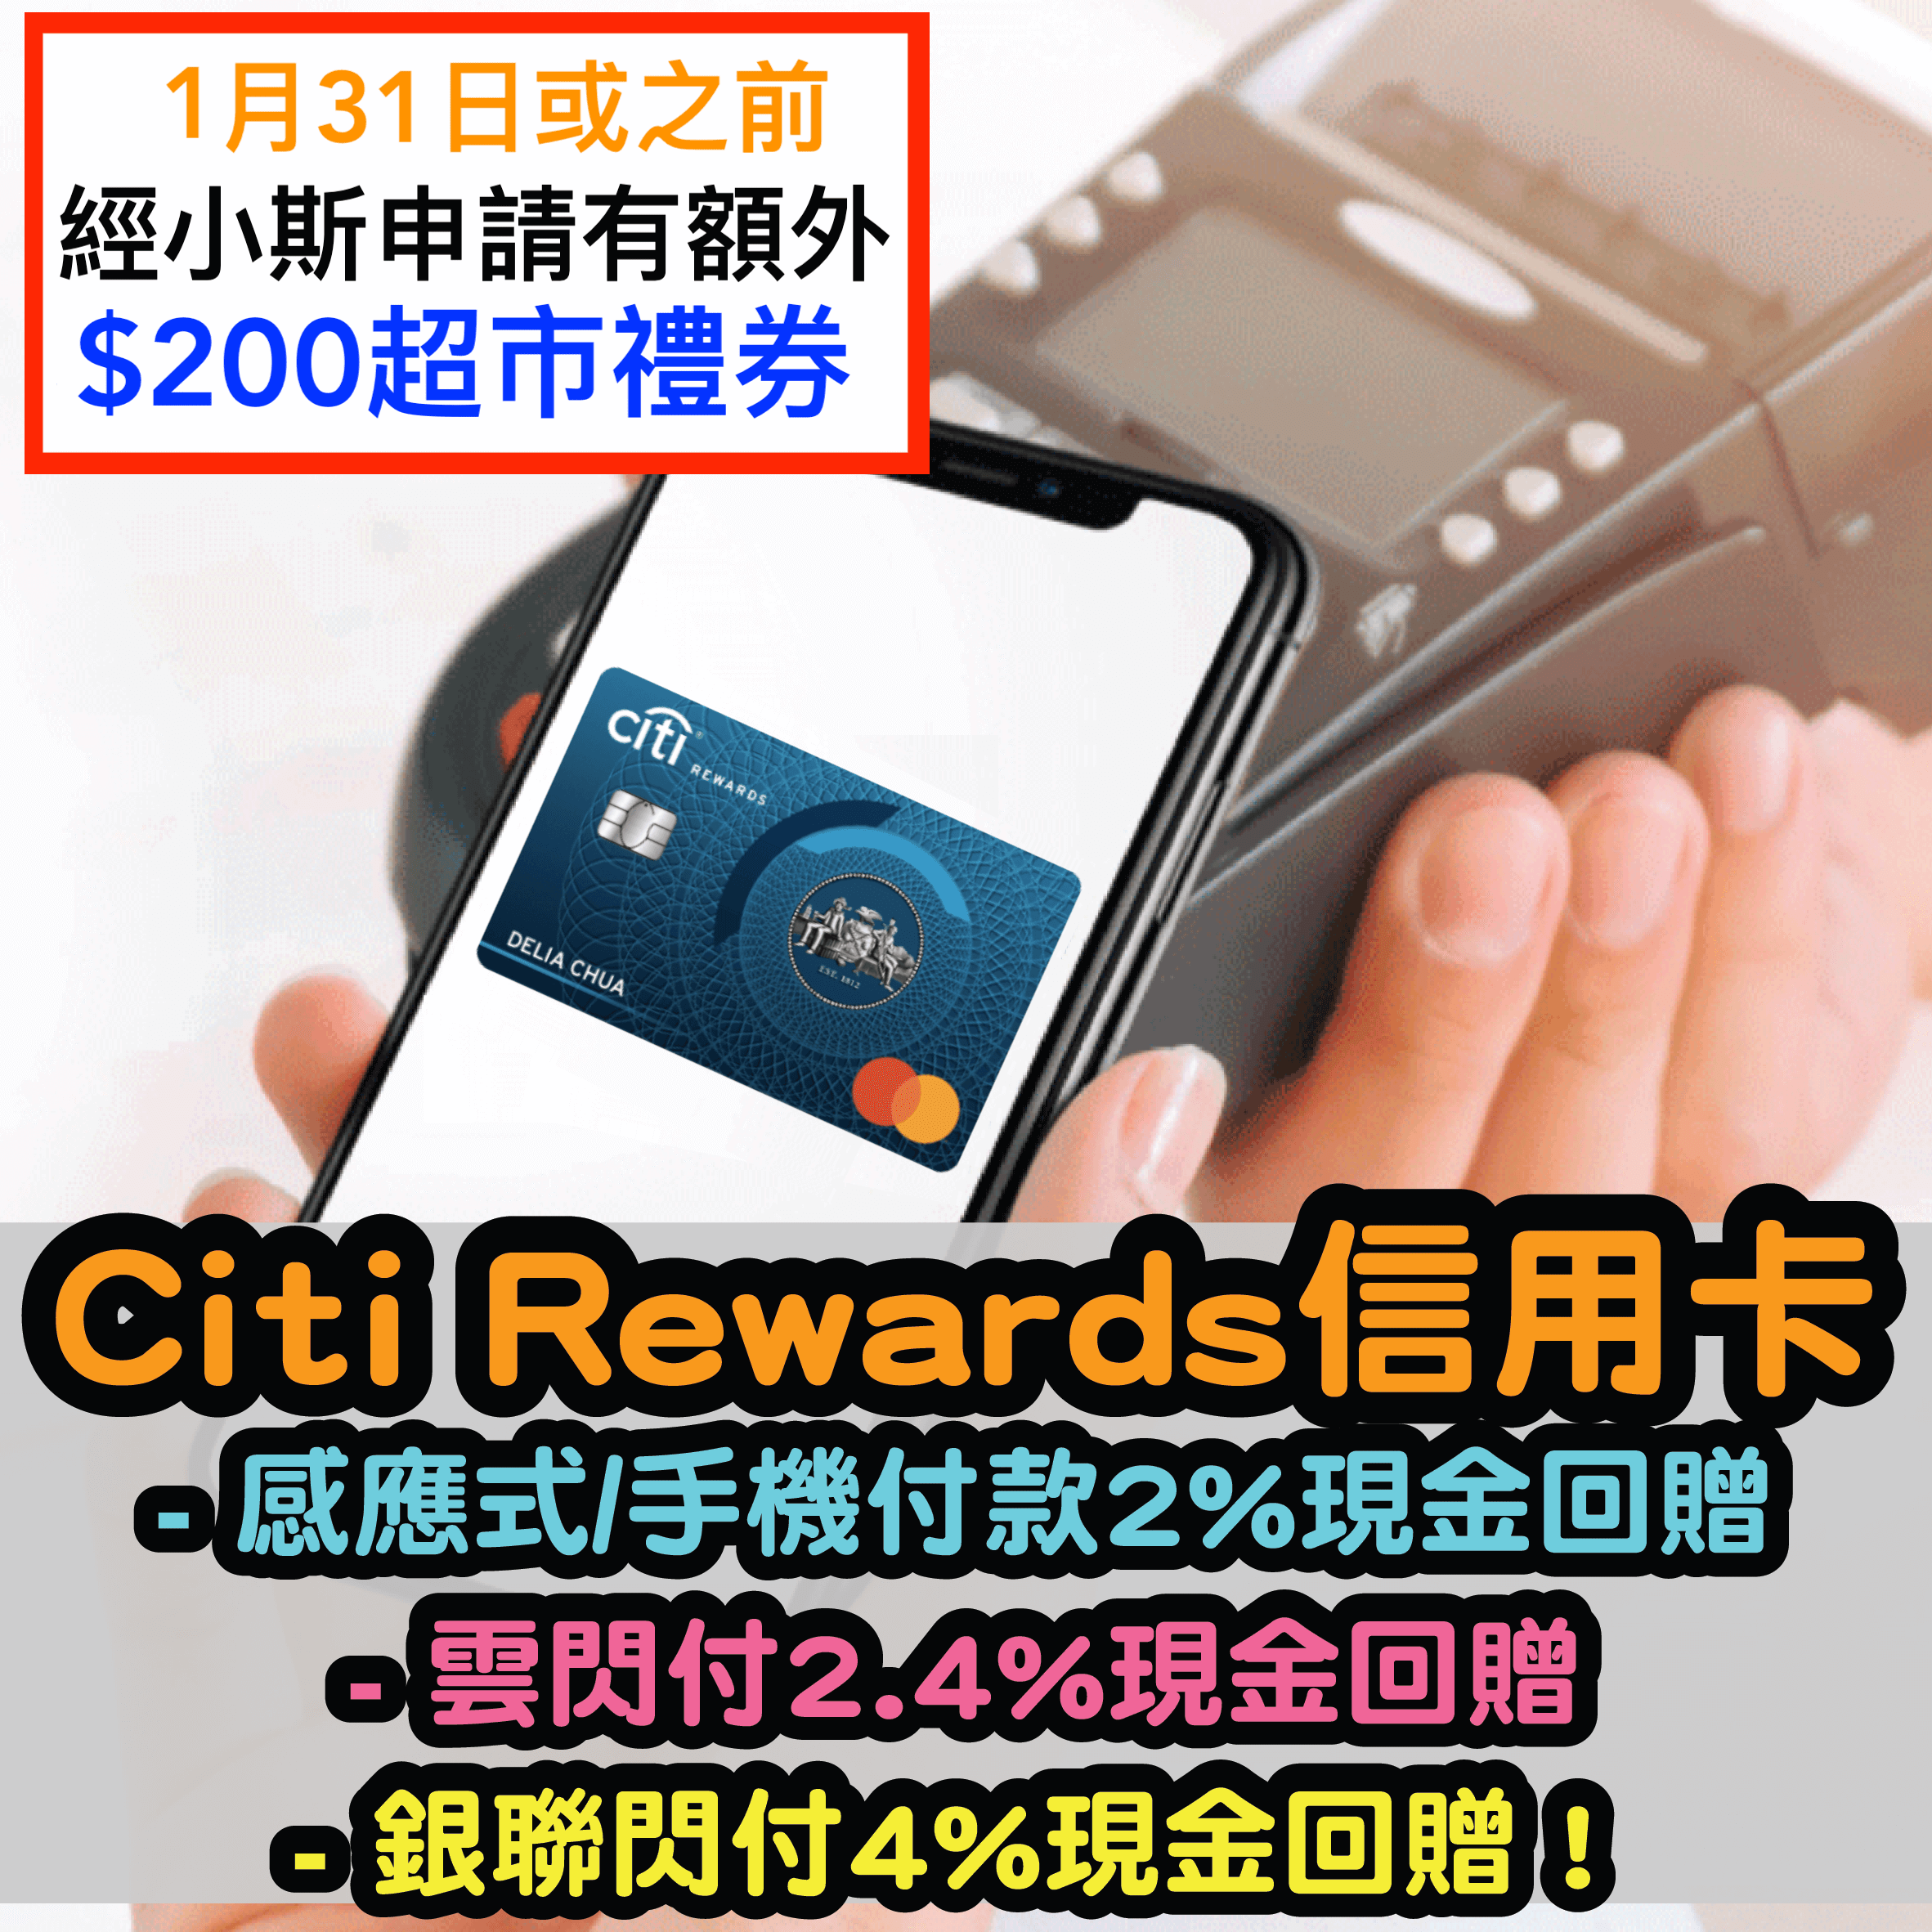 (小斯額外送$200) Citi Rewards 信用卡迎新簽$8,000有高達HK$1,120現金回贈！Payme/支付寶/Wechat Pay都計迎新！感應式/手機付款2%現金回贈；雲閃付2.4%現金回贈！銀聯閃付4%現金回贈！